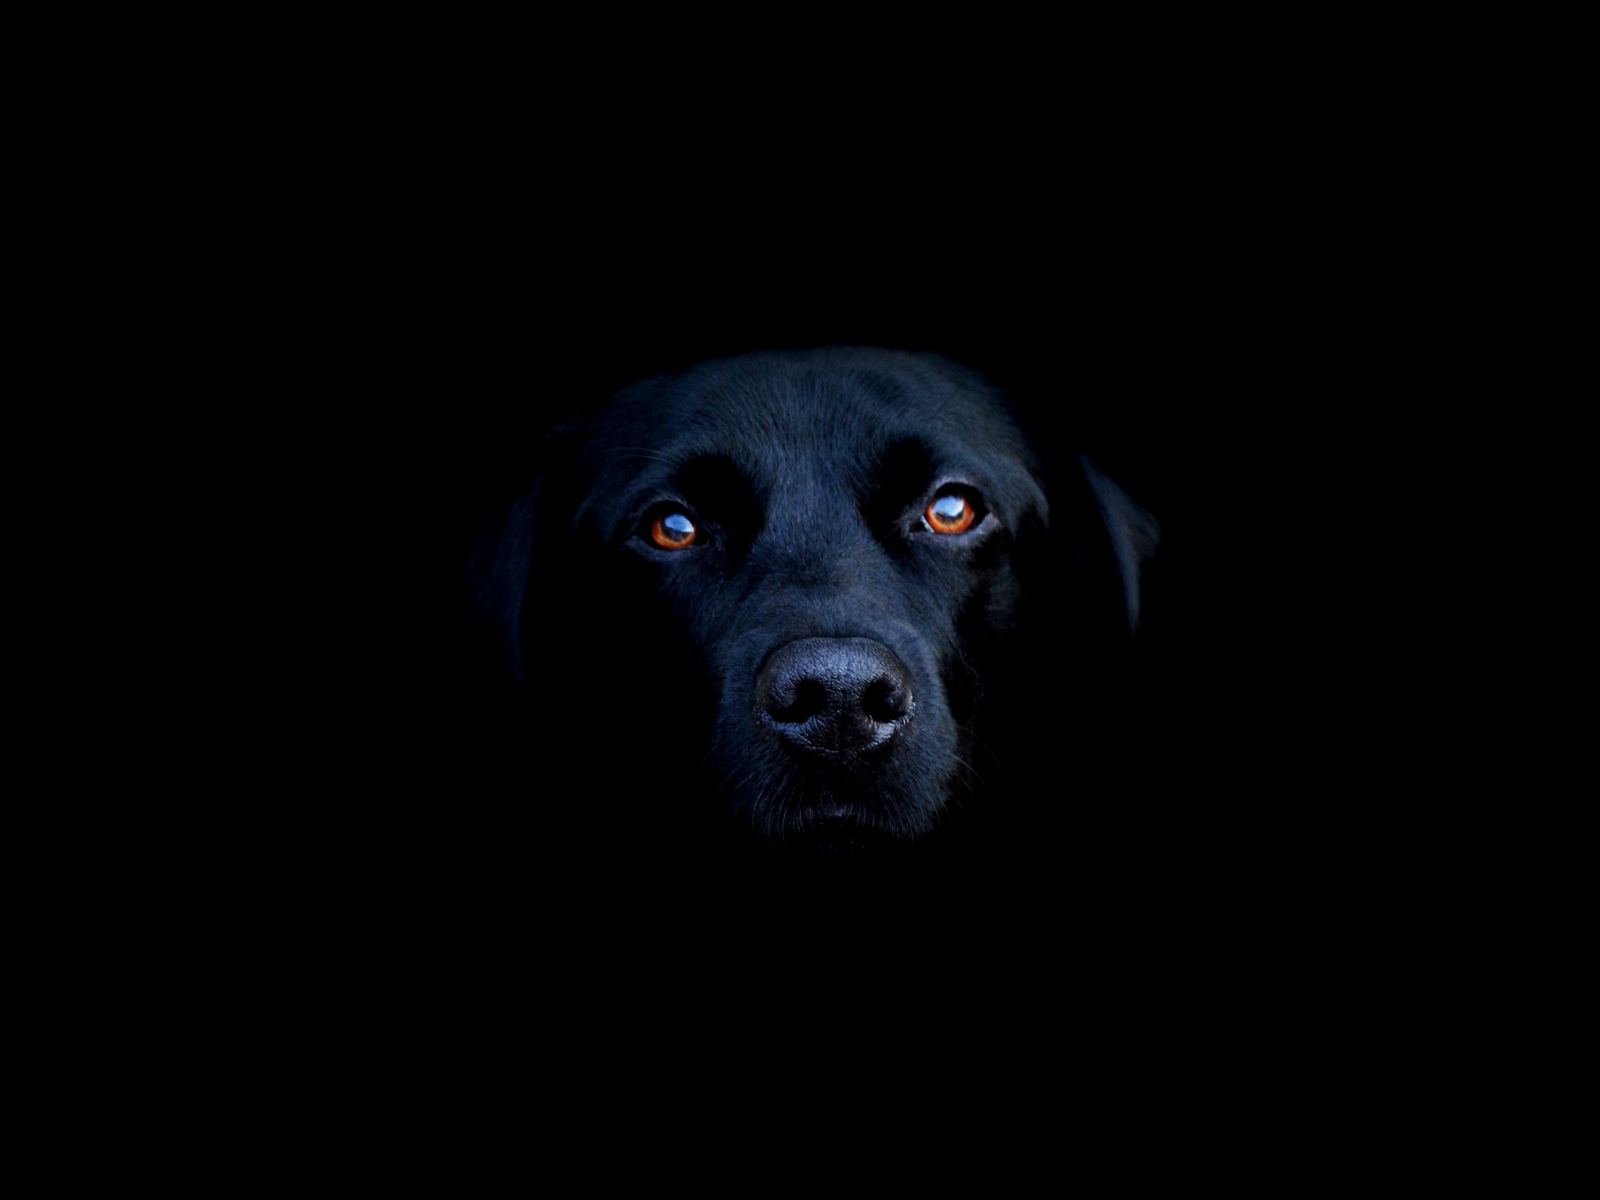 Black Dog in the Dark